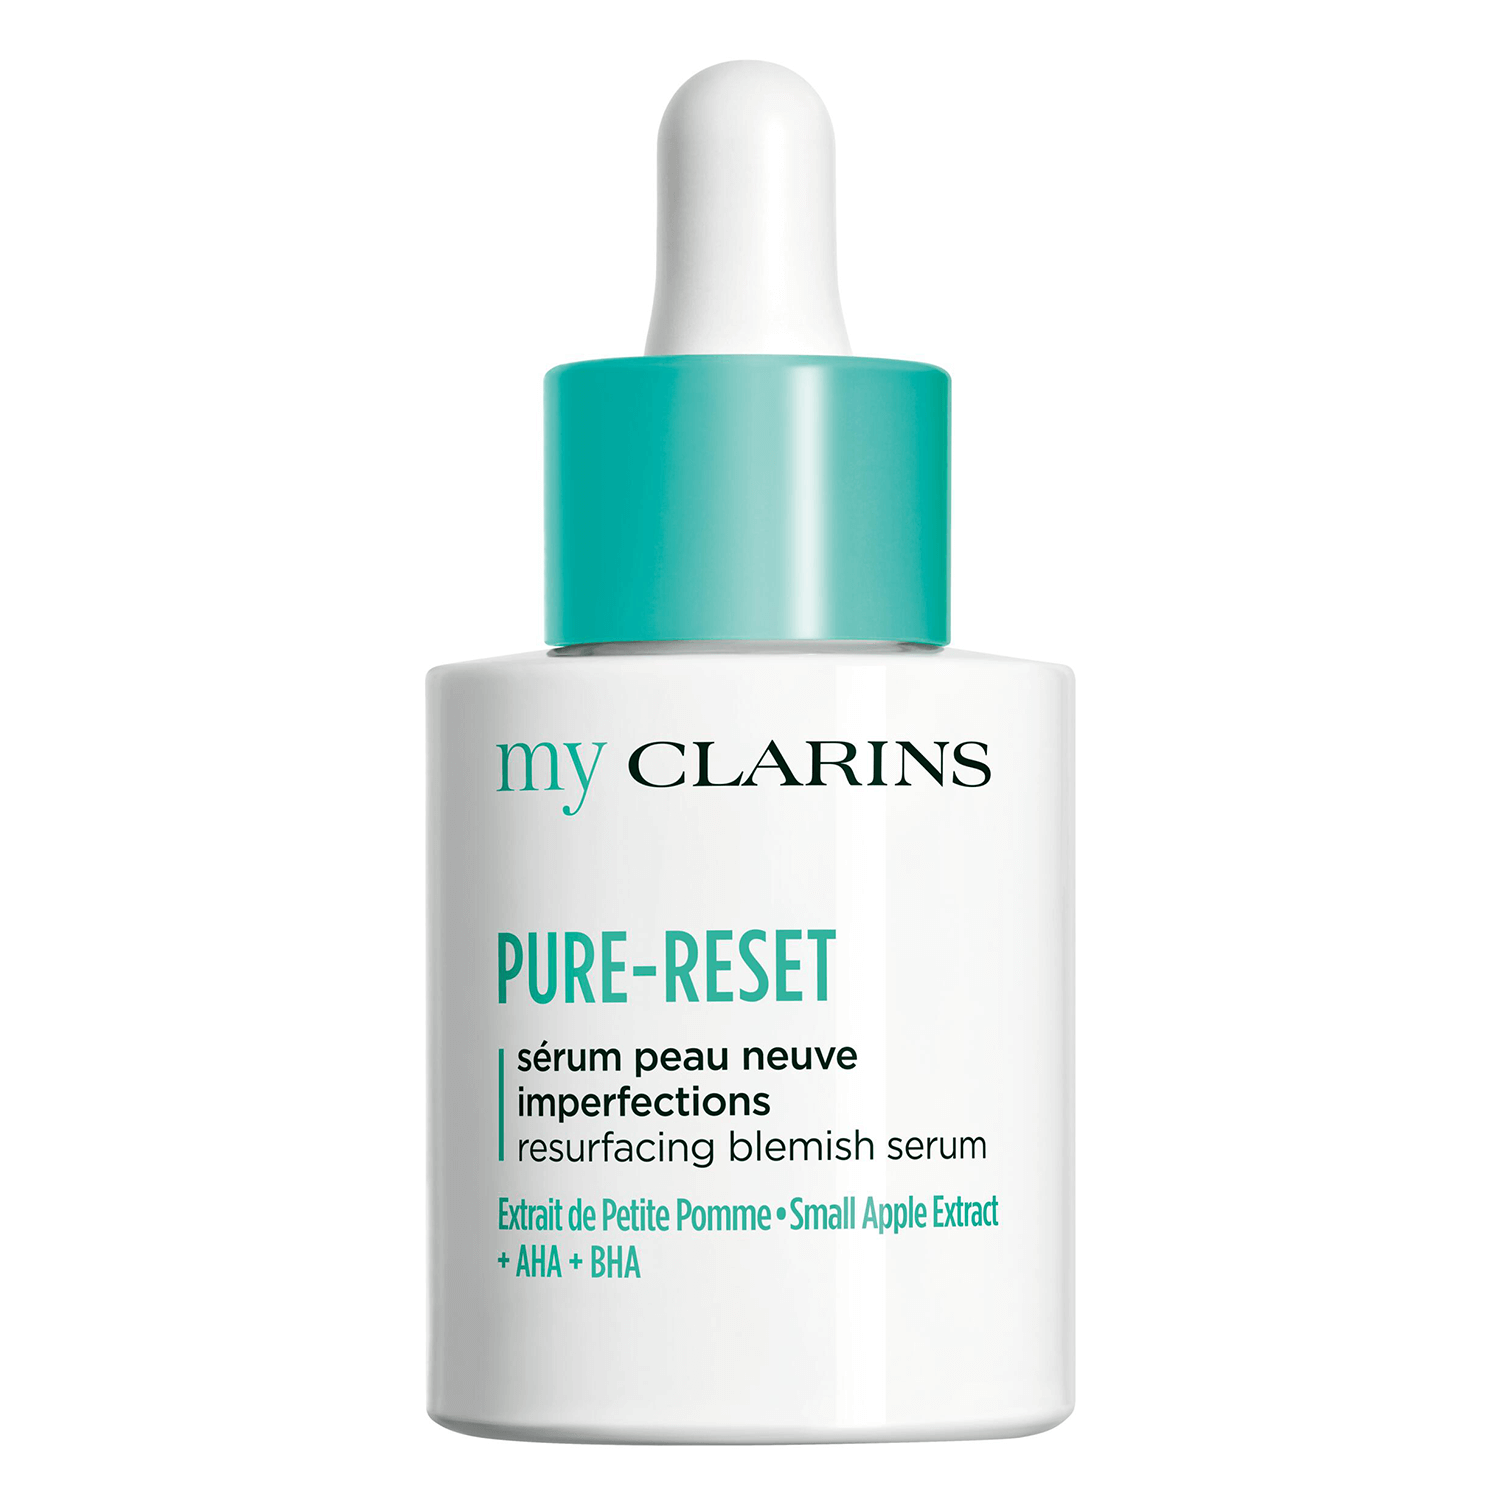 Produktbild von myClarins - PURE-RESET resurfacing blemish serum